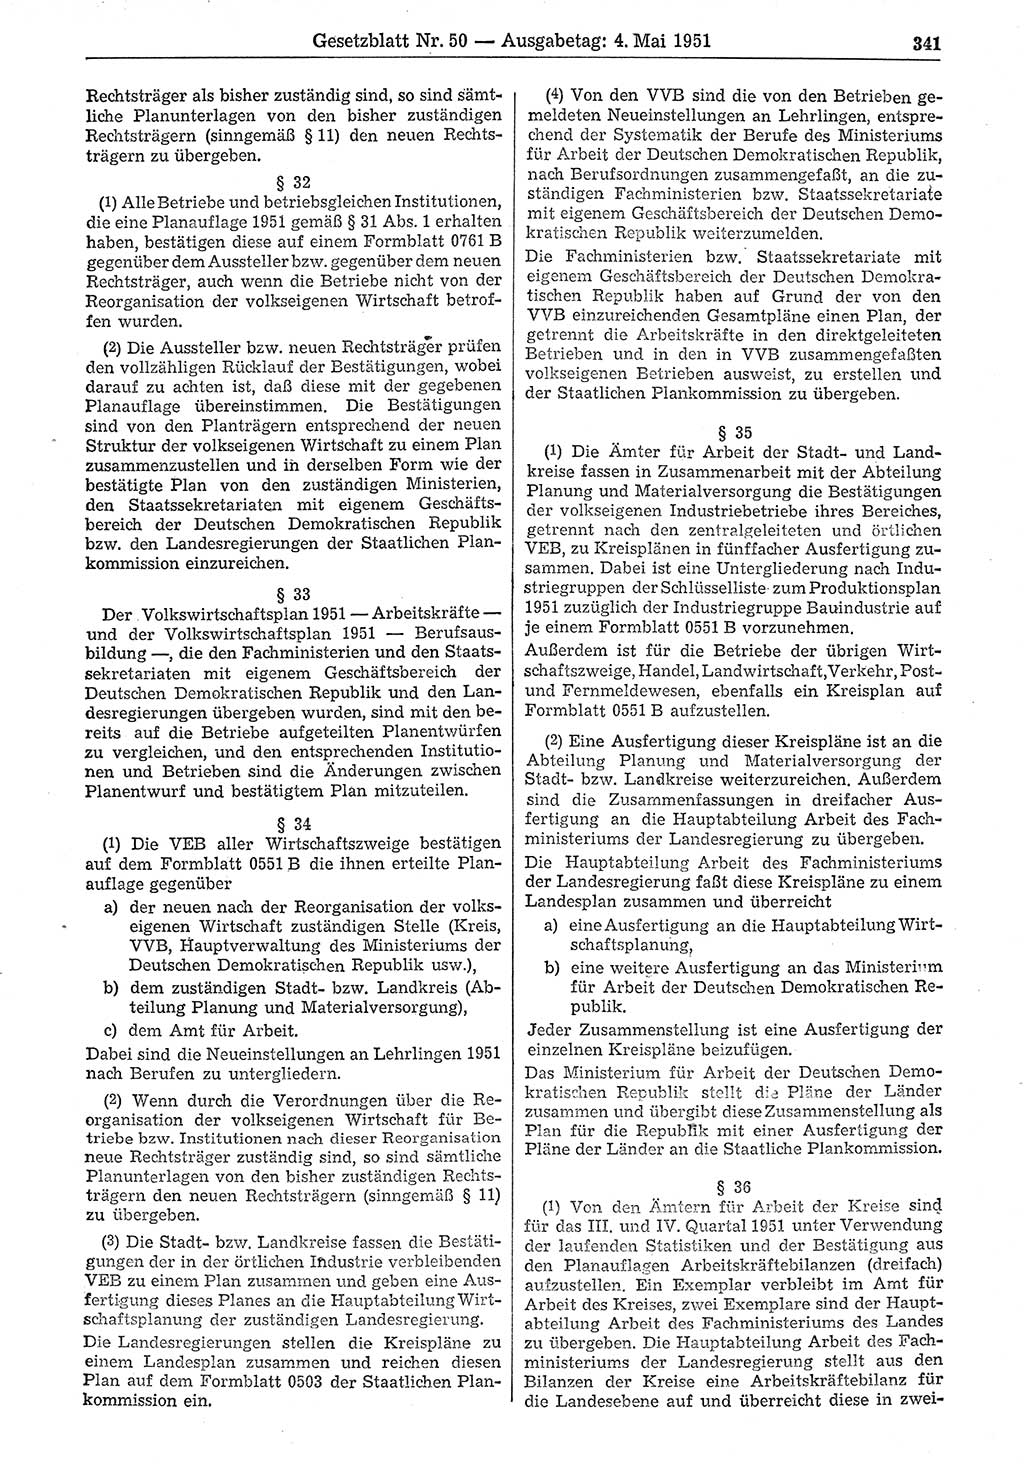 Gesetzblatt (GBl.) der Deutschen Demokratischen Republik (DDR) 1951, Seite 341 (GBl. DDR 1951, S. 341)